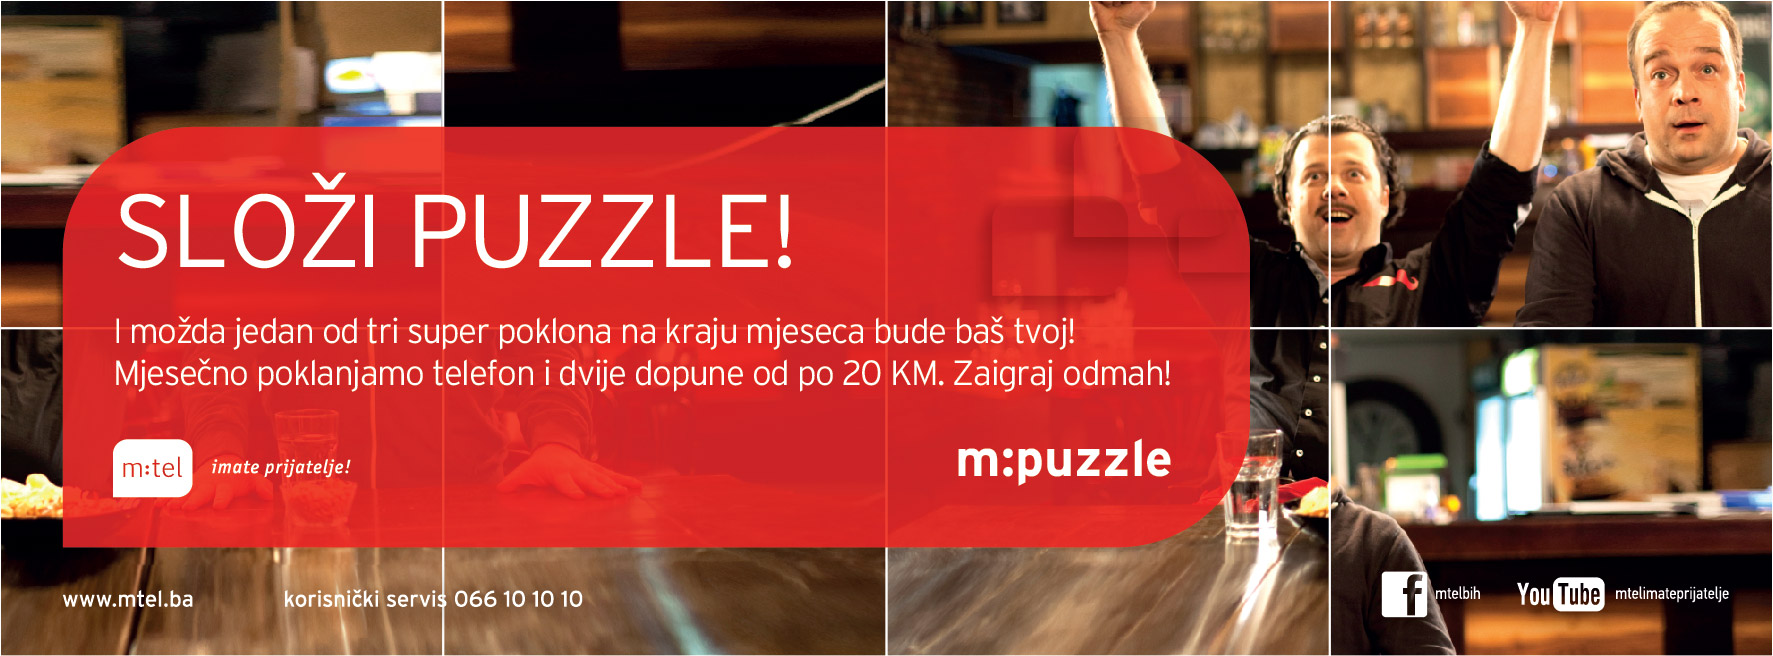 m puzzle mtel bih